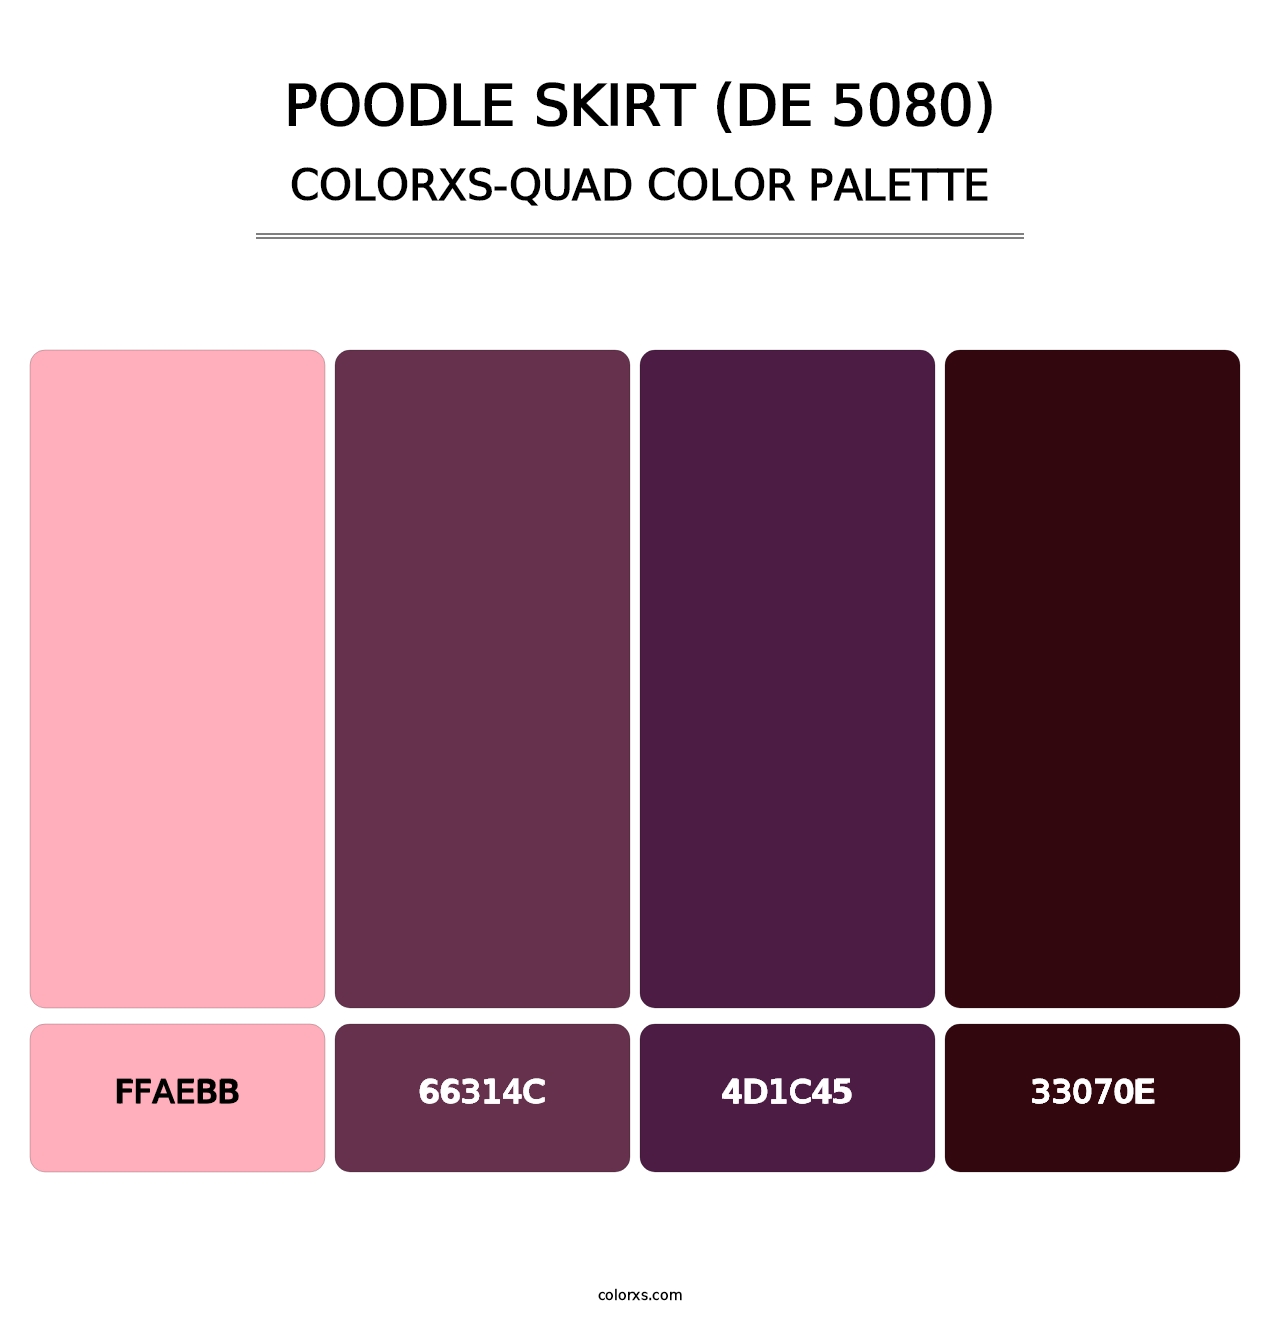 Poodle Skirt (DE 5080) - Colorxs Quad Palette